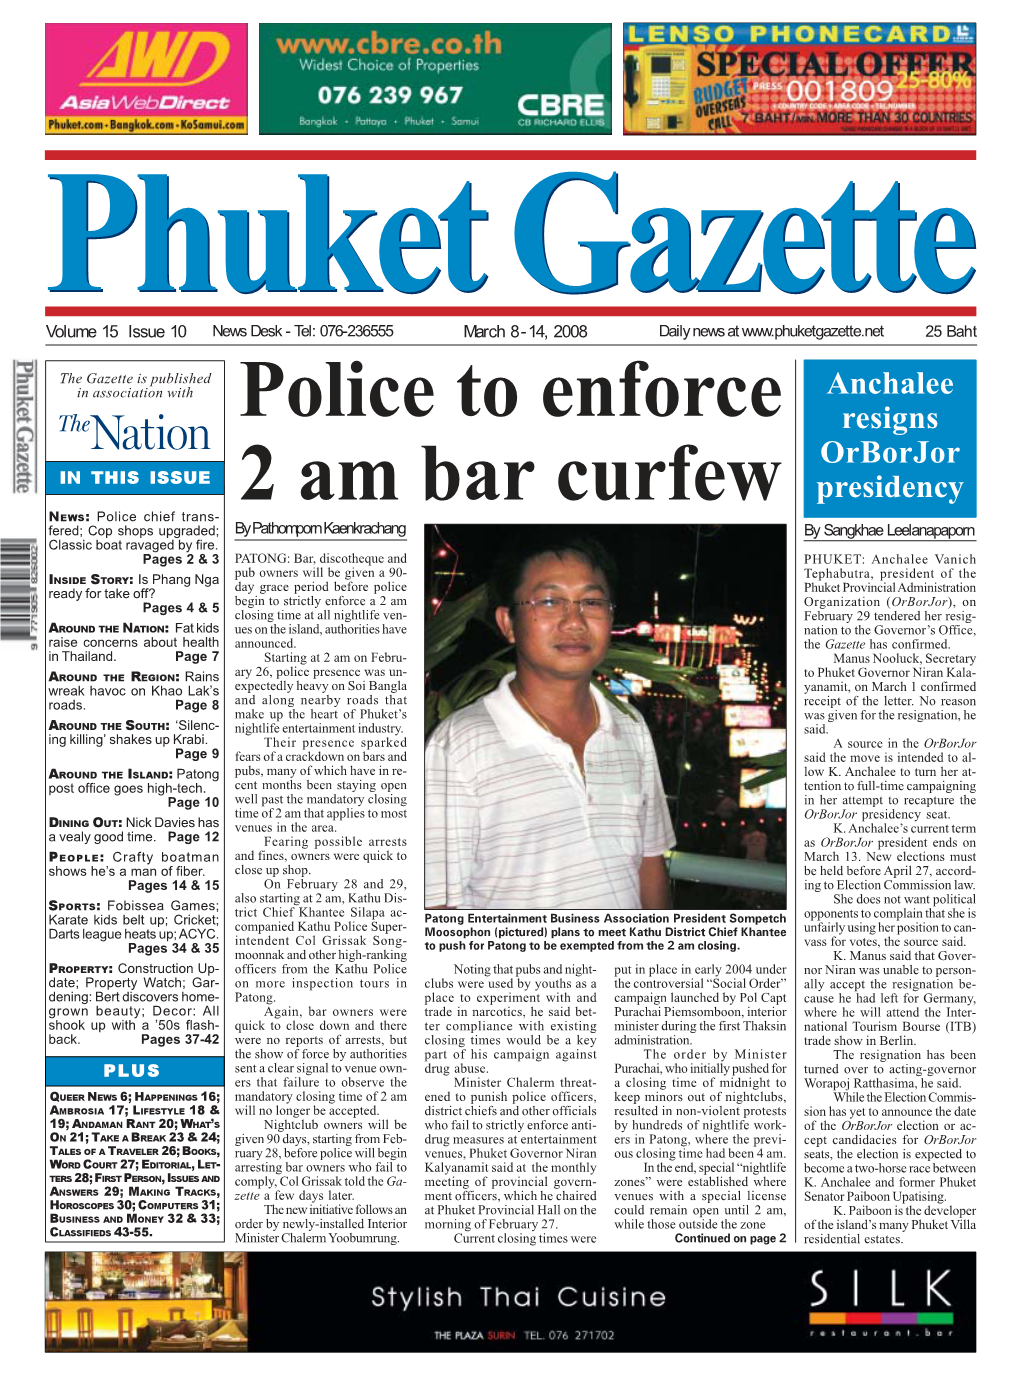 Police to Enforce 2 Am Bar Curfew